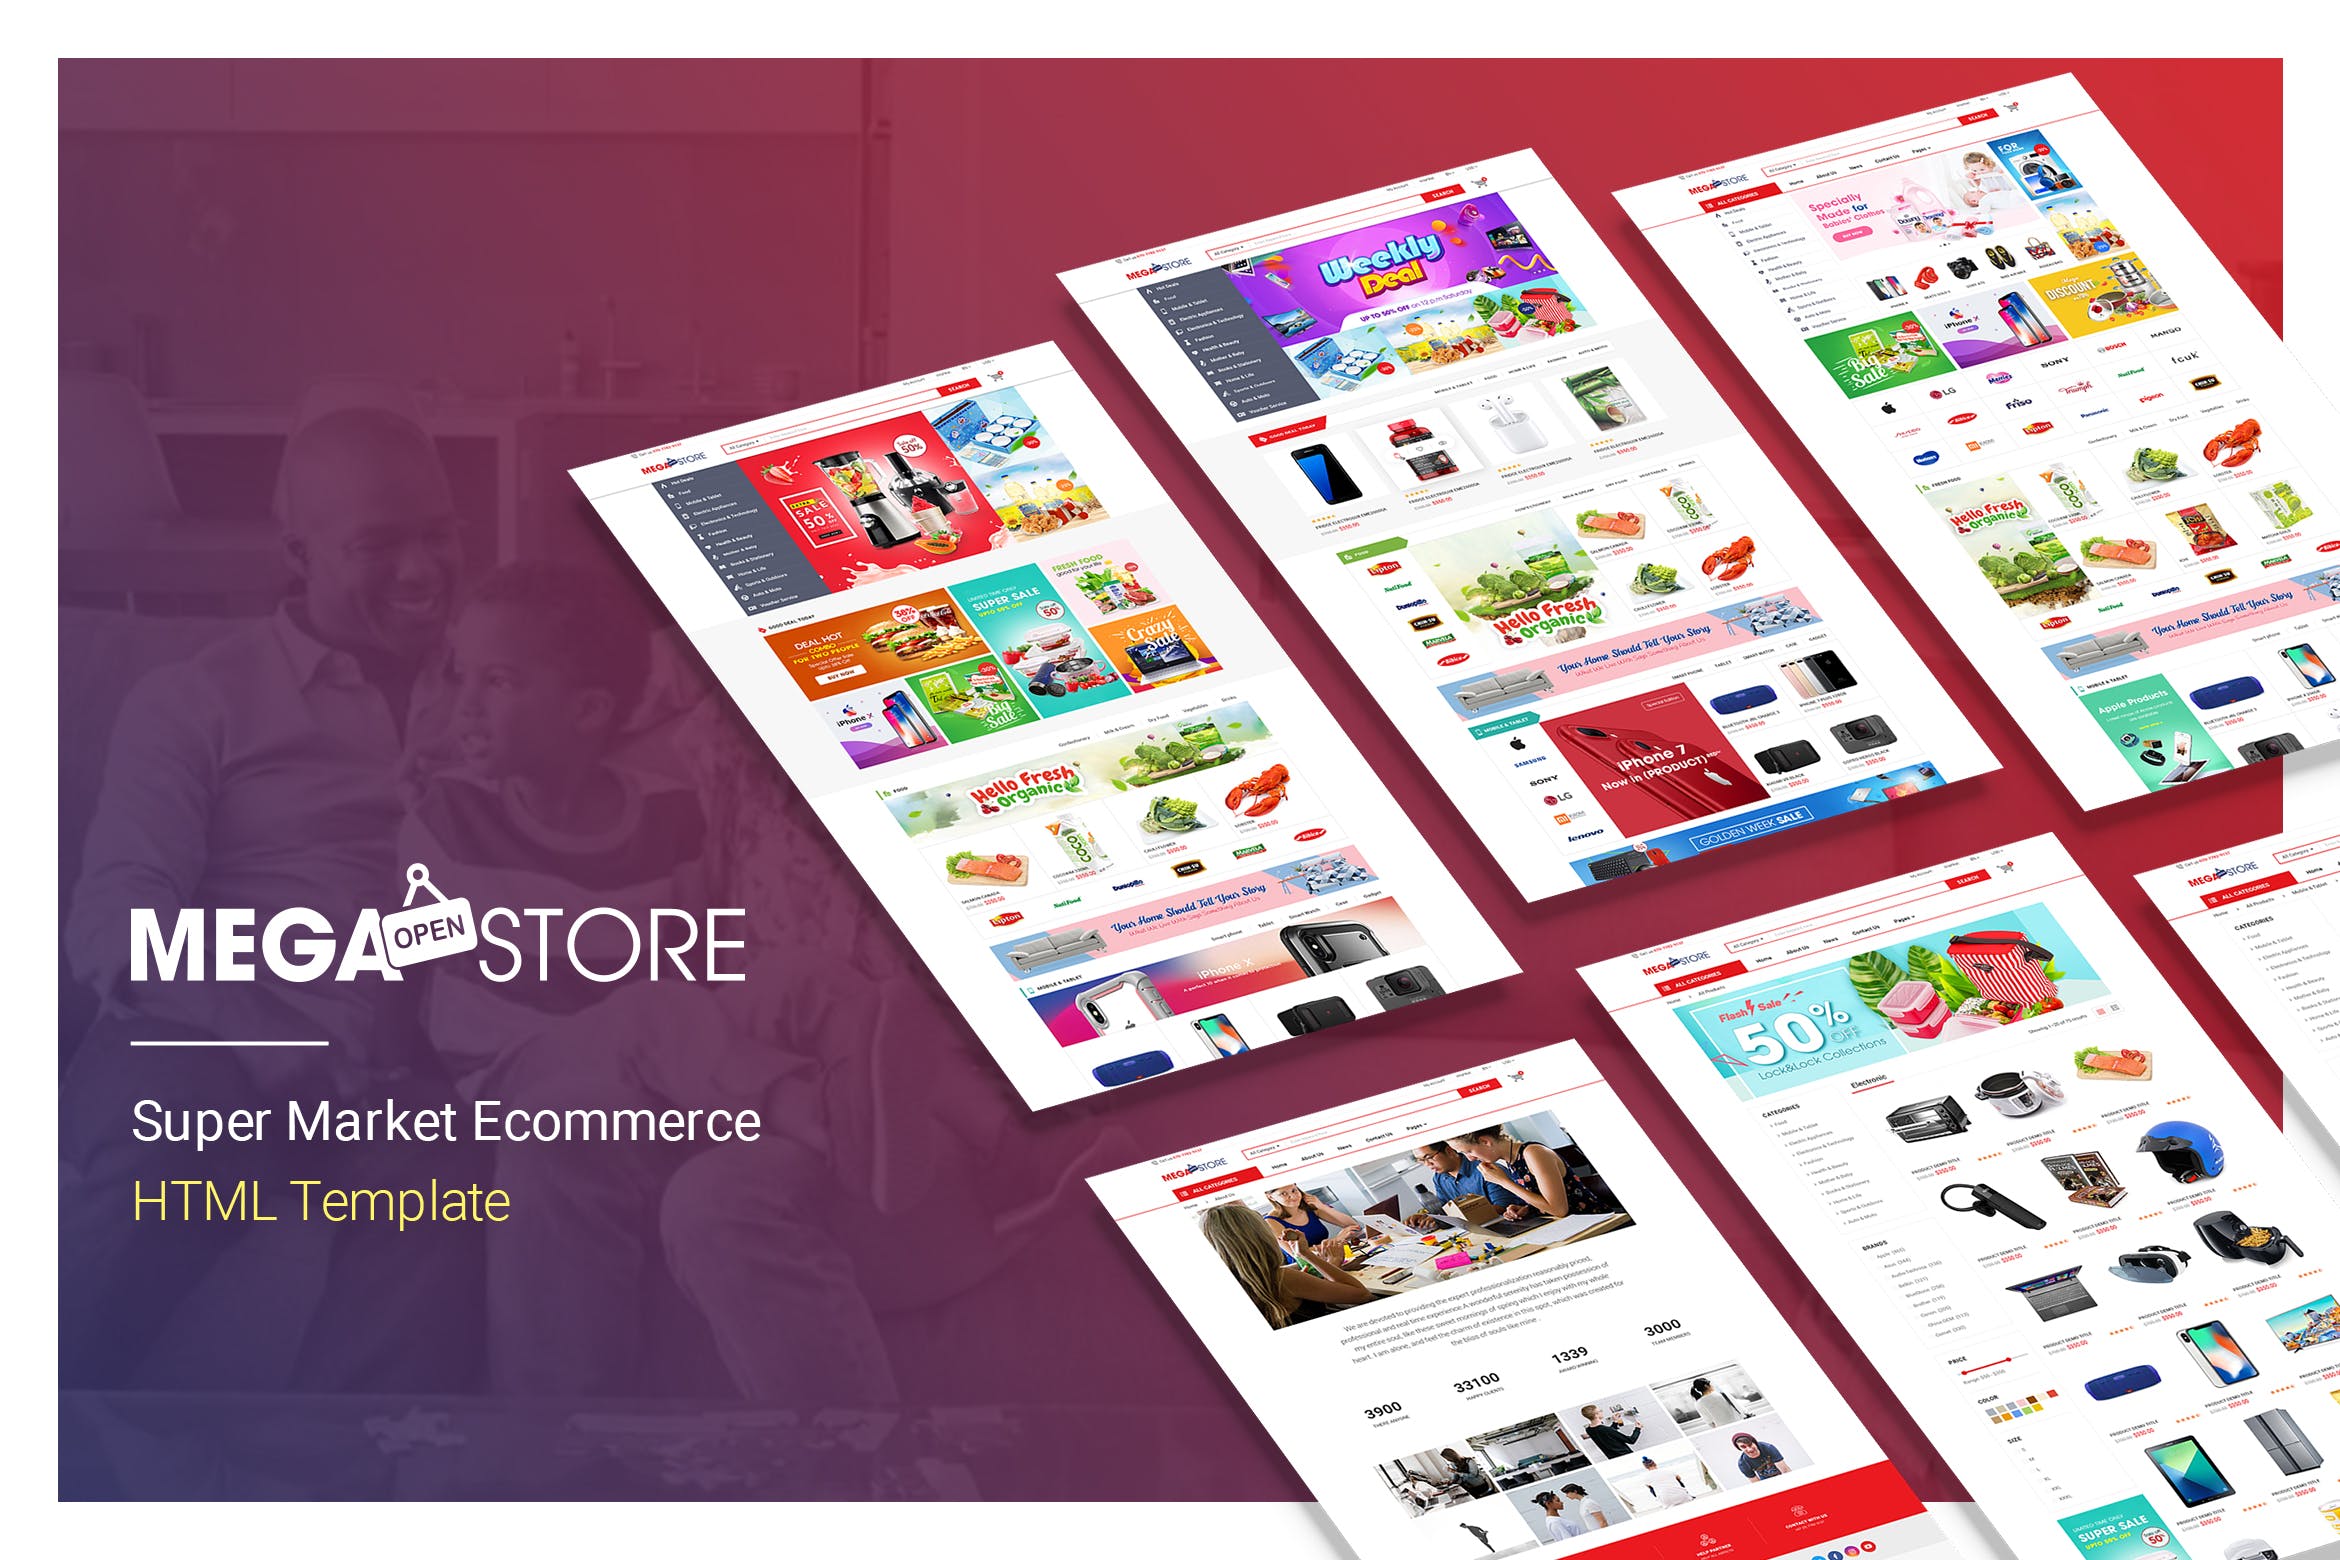 超级市场电子商务HTML网上商城模板蚂蚁素材精选 MegaStore | Super Market Ecommerce HTML Template插图